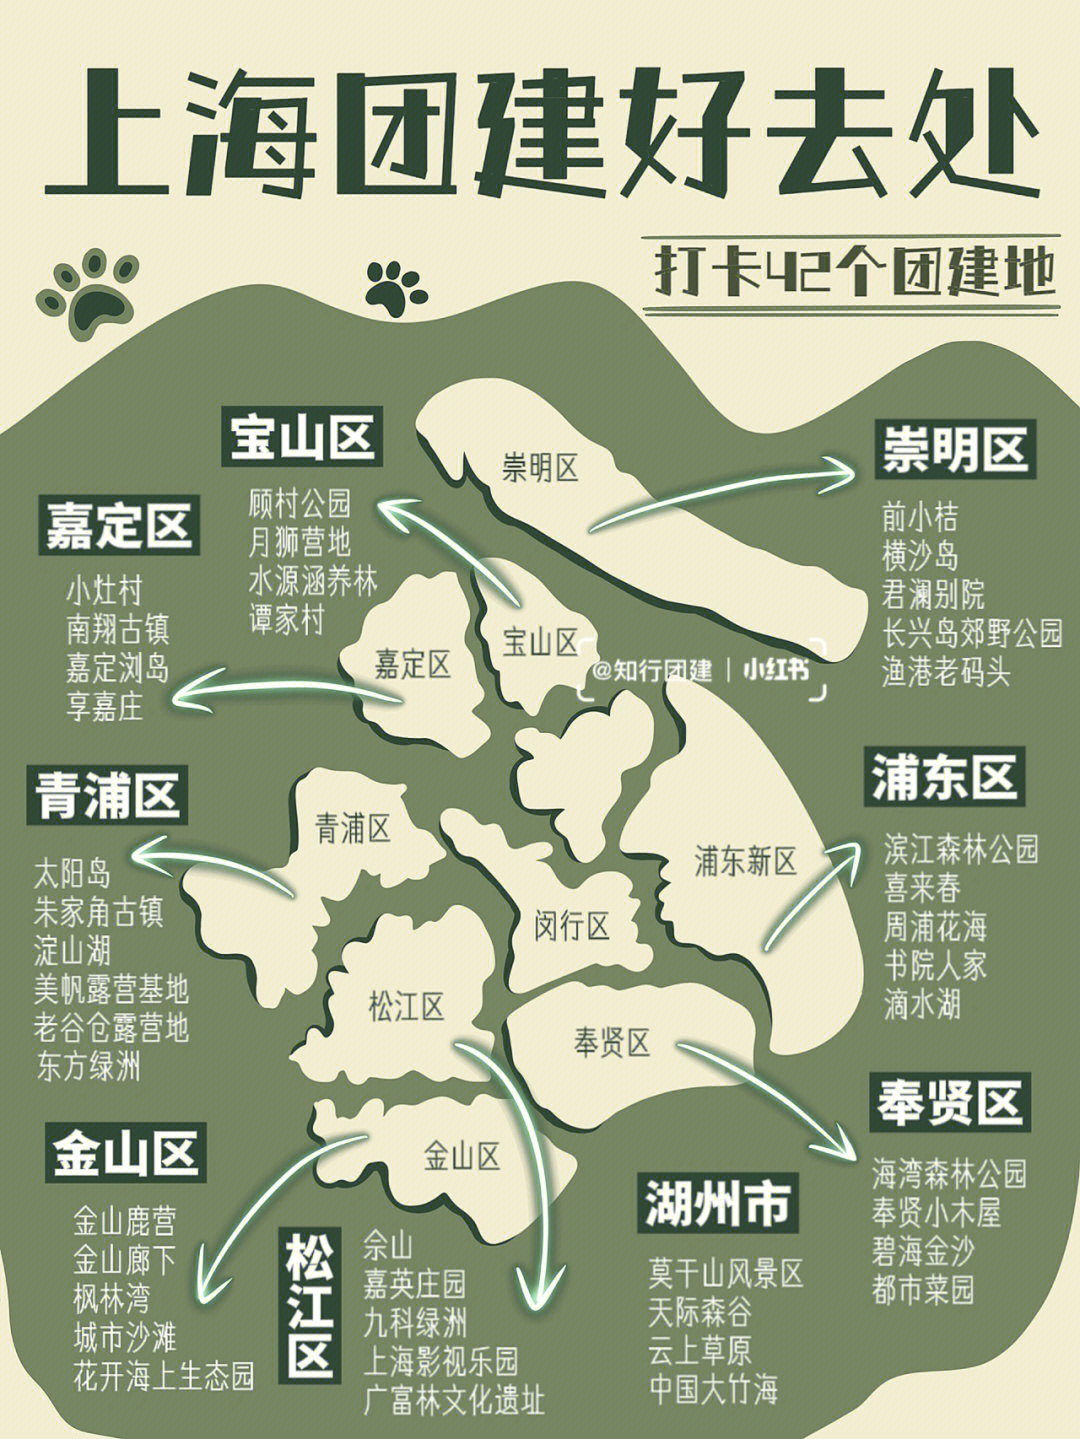 上海周边游06超全打卡地图75上海团建